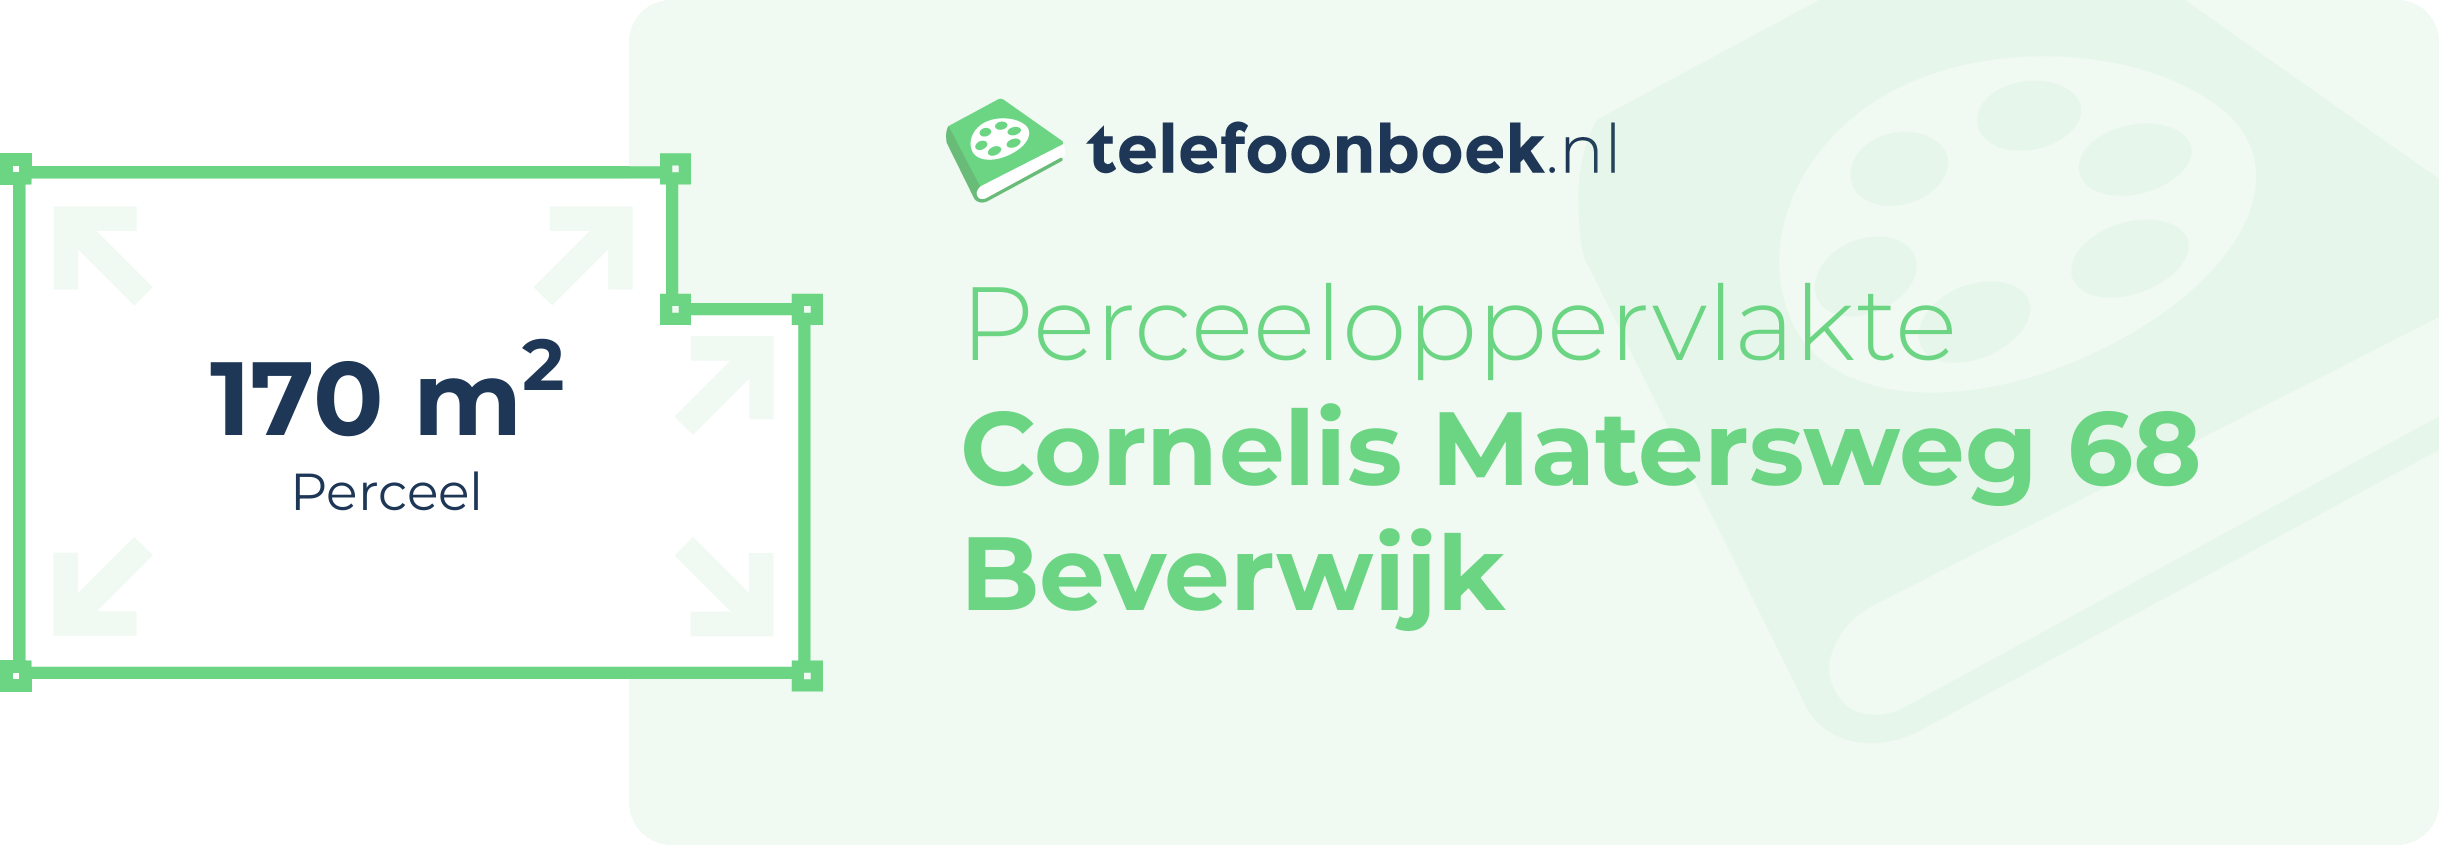 Perceeloppervlakte Cornelis Matersweg 68 Beverwijk